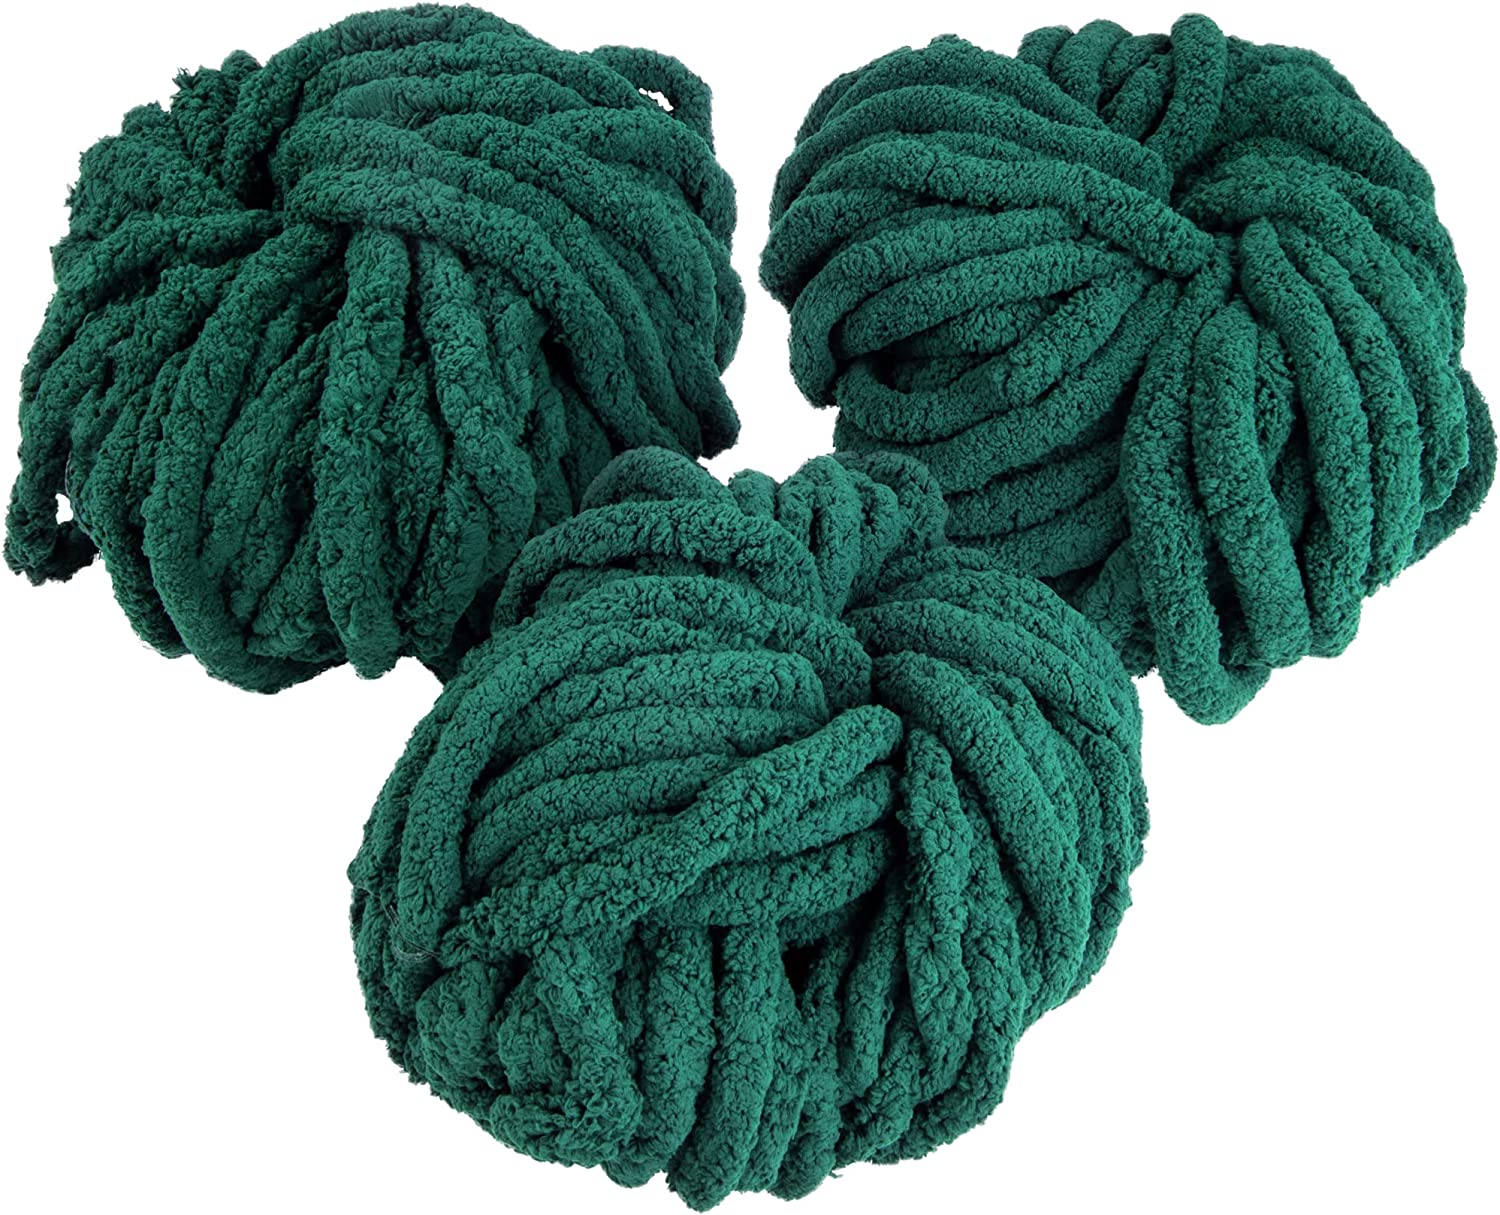 iDIY Chunky Yarn 3 Pack (24 Yards Each Skein) - Dark Green